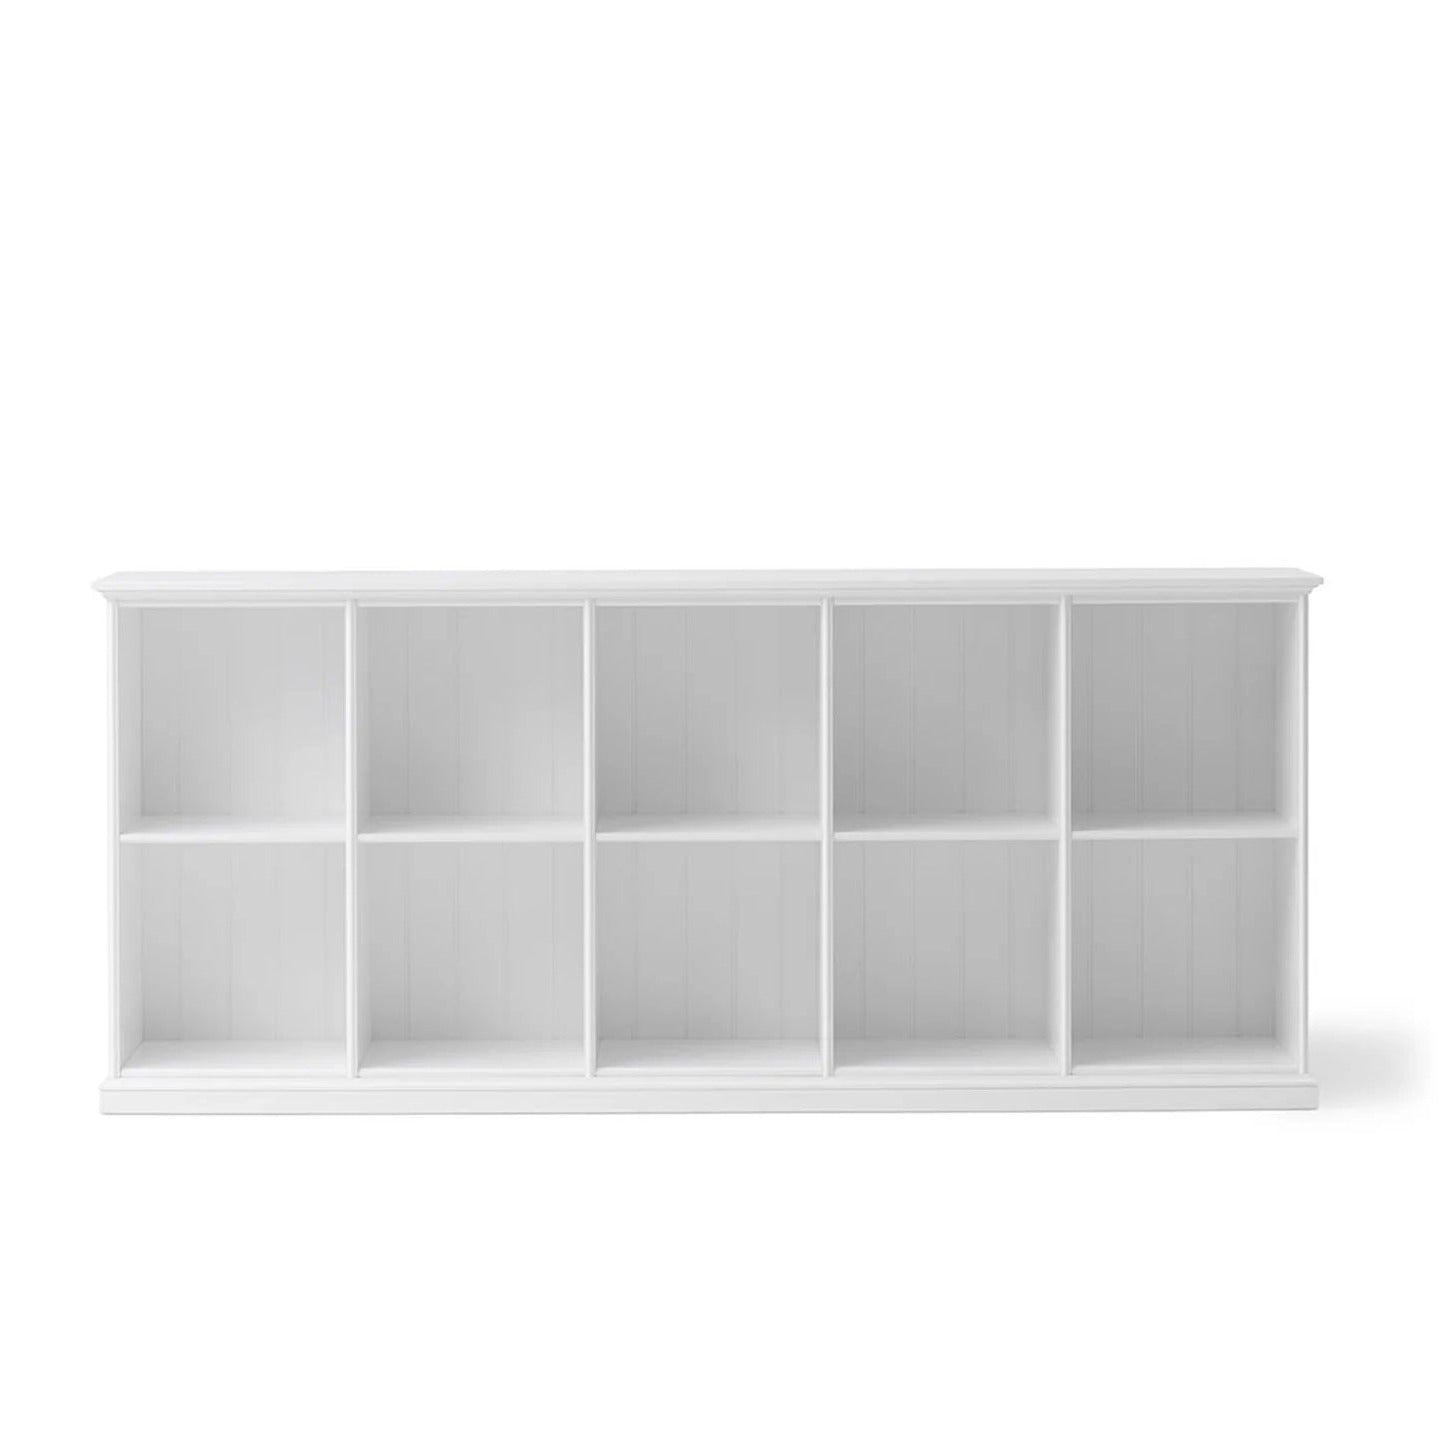 Oliver Furniture Seaside Low Standing Cabinet - 10 Shelves